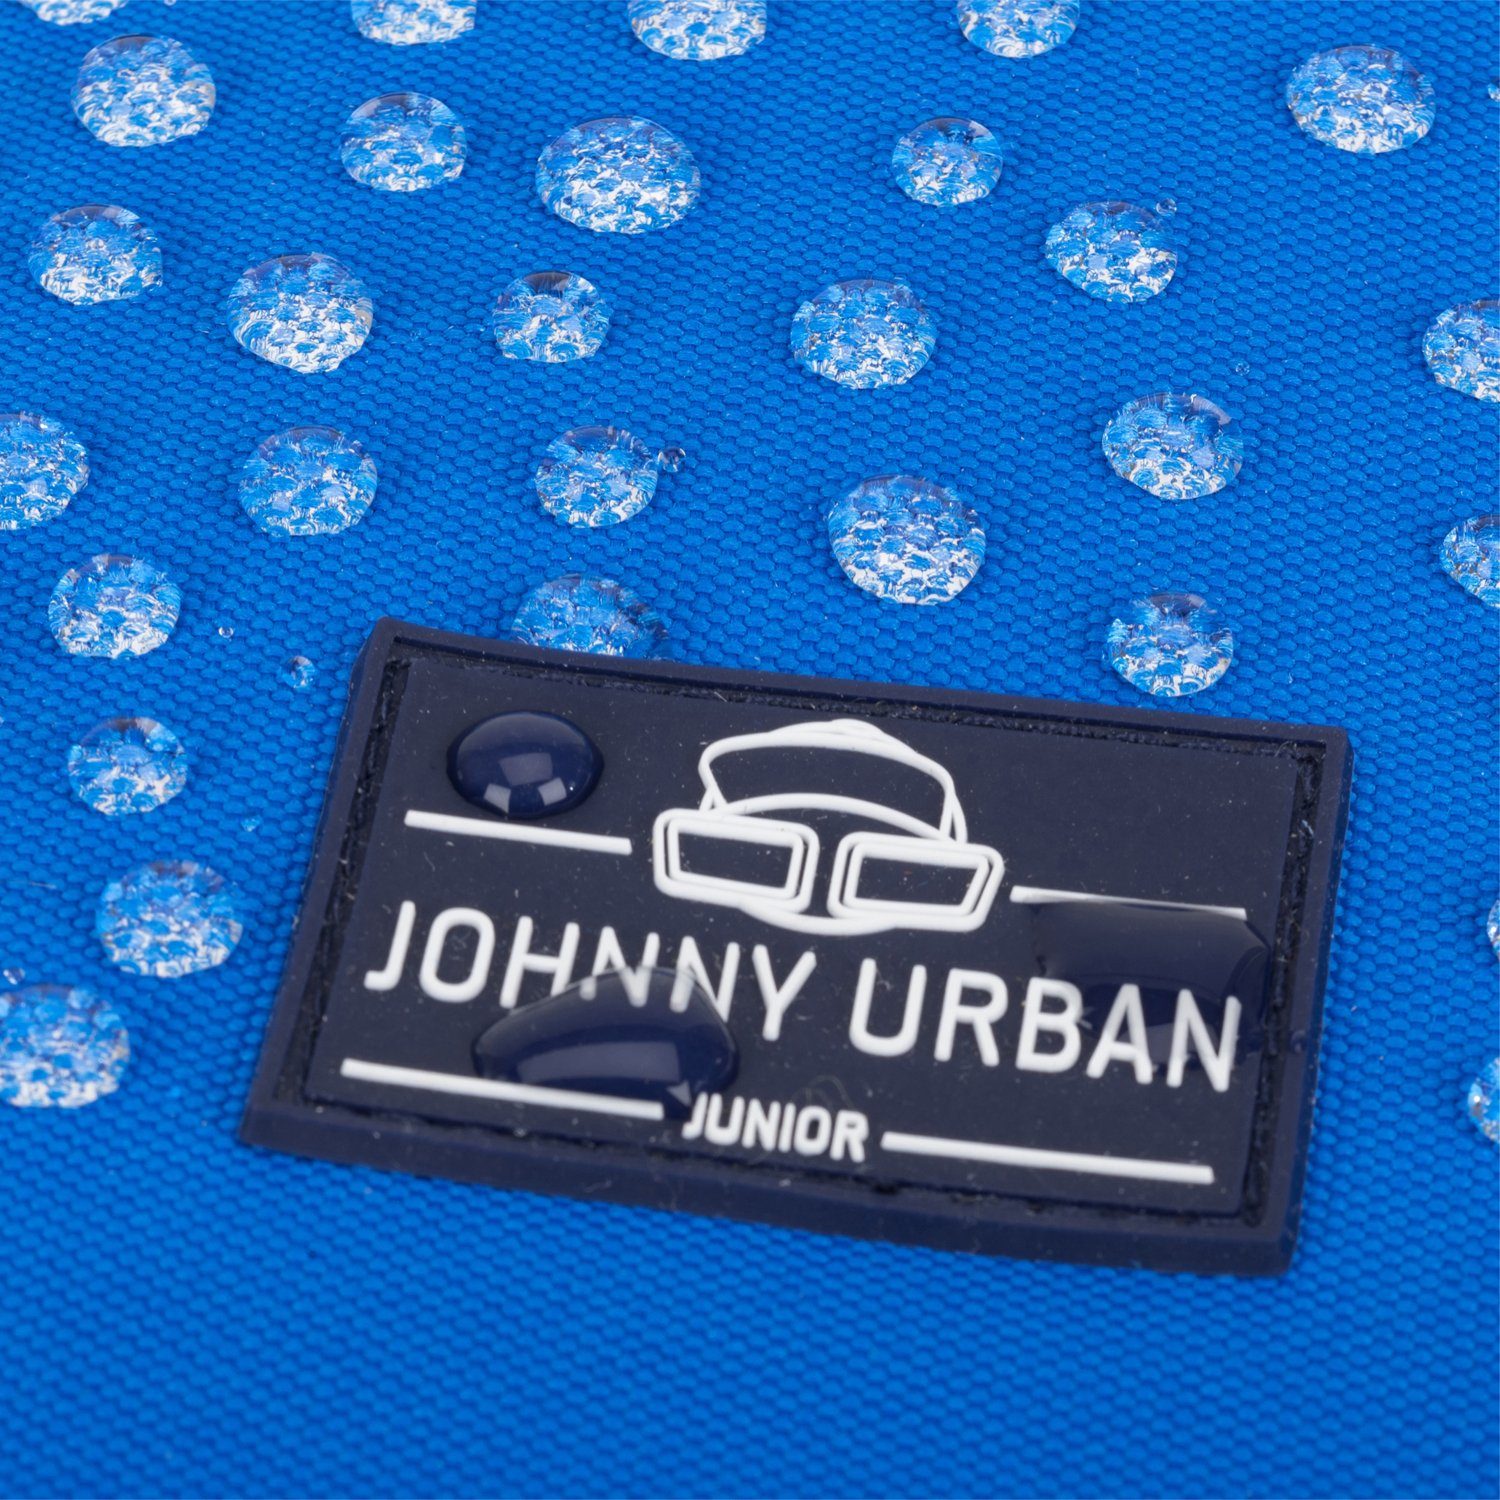 Polsterung, Jungen, Kinderrucksack Rucksack Weiche Urban Recyceltes Johnny blau Material, Wasserabweisend Junior Mädchen Liam Kinder